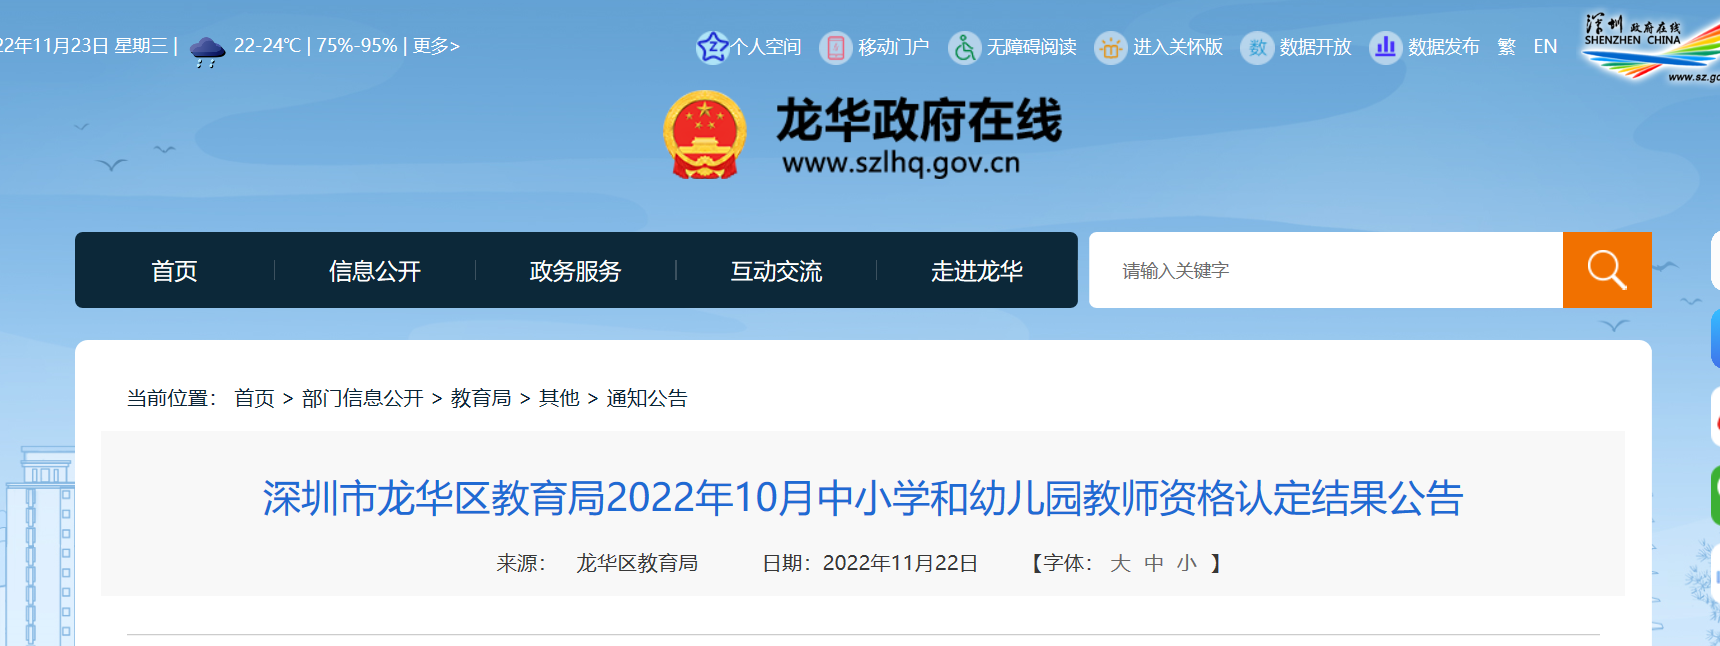 2022年10月广东深圳市龙华区中小学和幼儿园教师资格认定结果公告